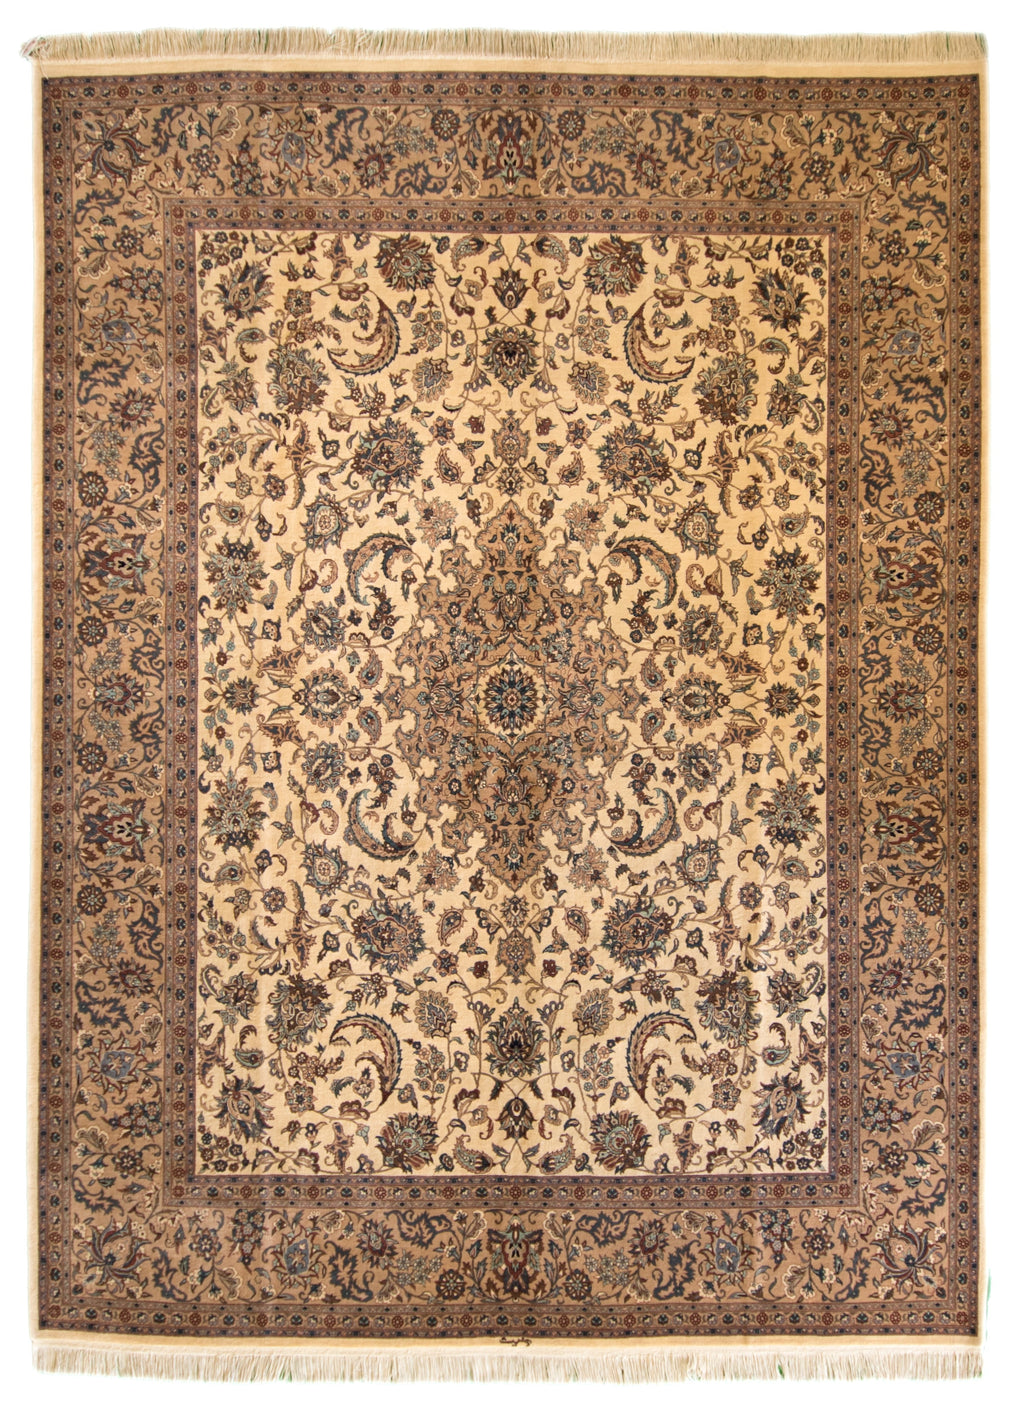 Tabriz Persian Rug 8.6 x 11